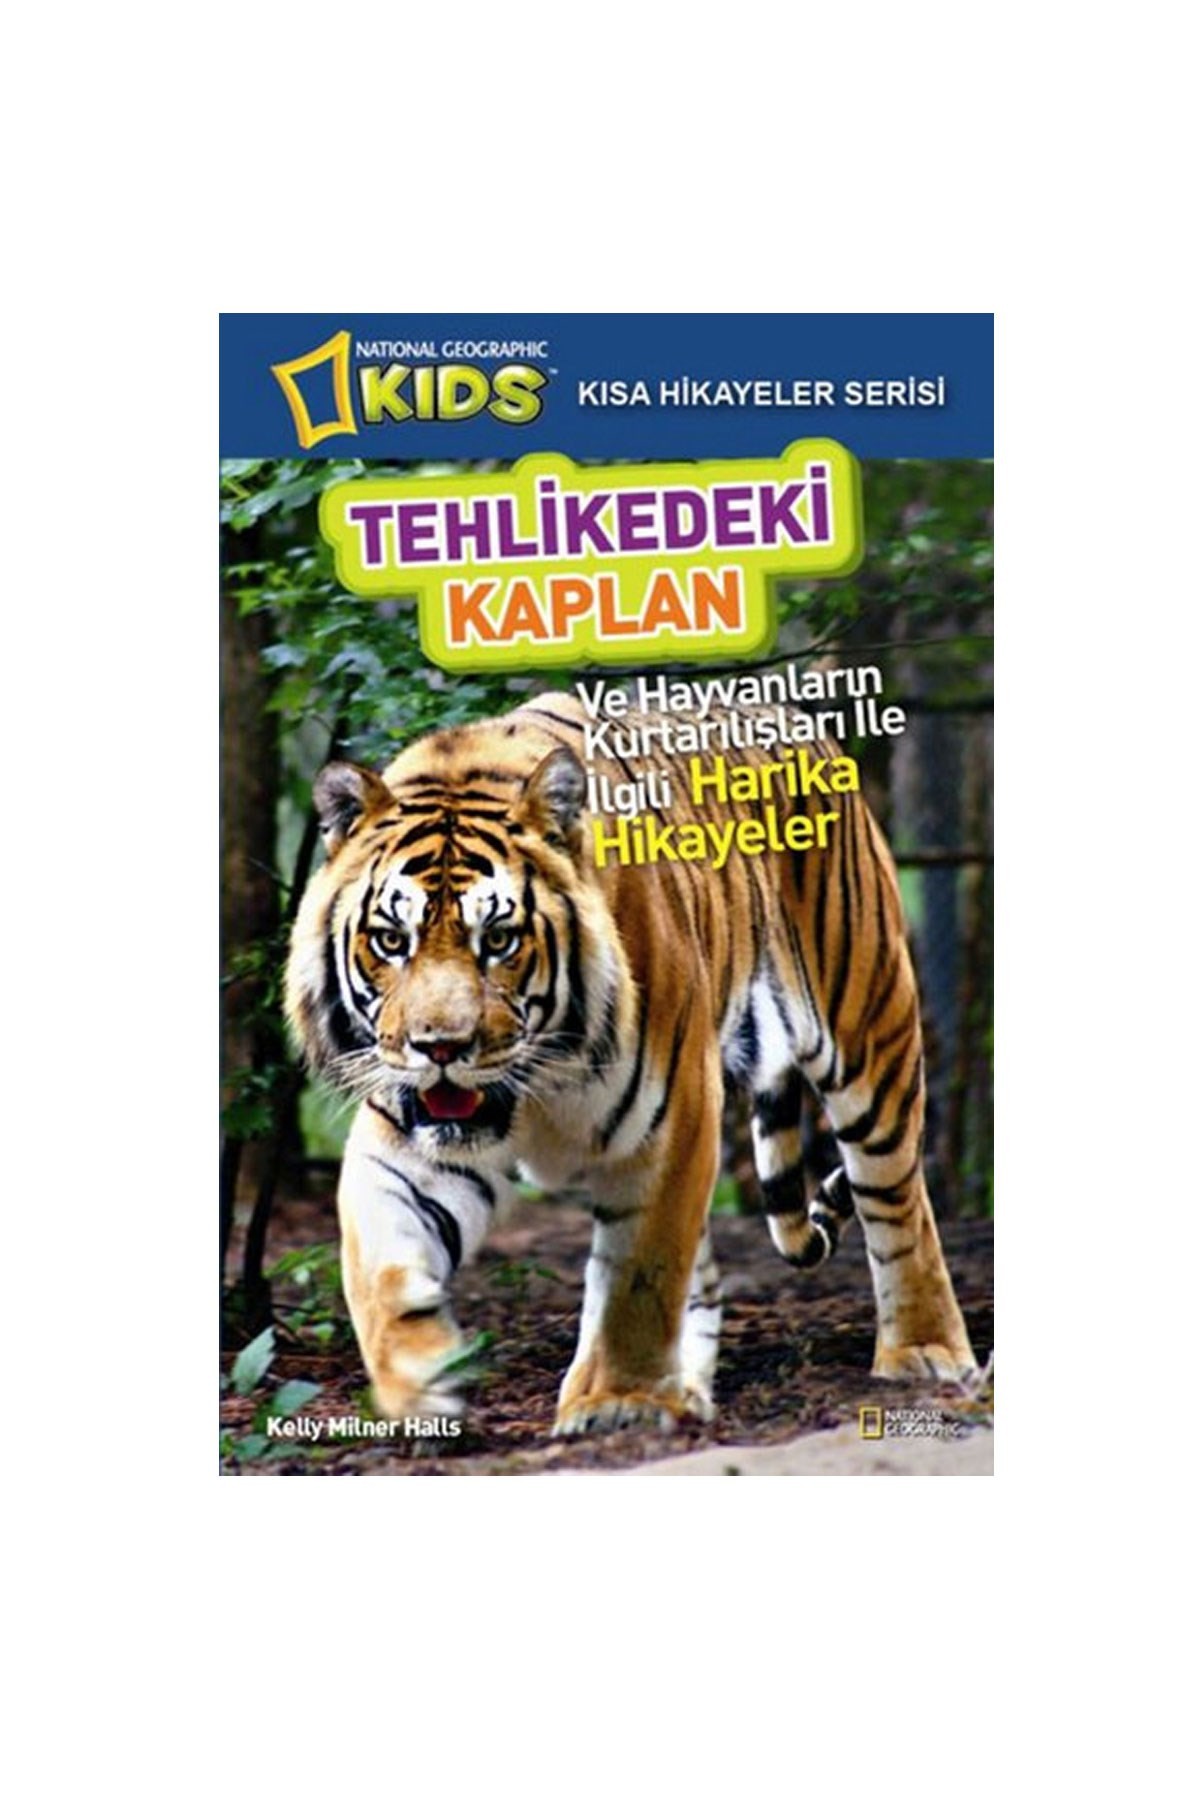 National Geographic Kids Tehlikedeki Kaplan